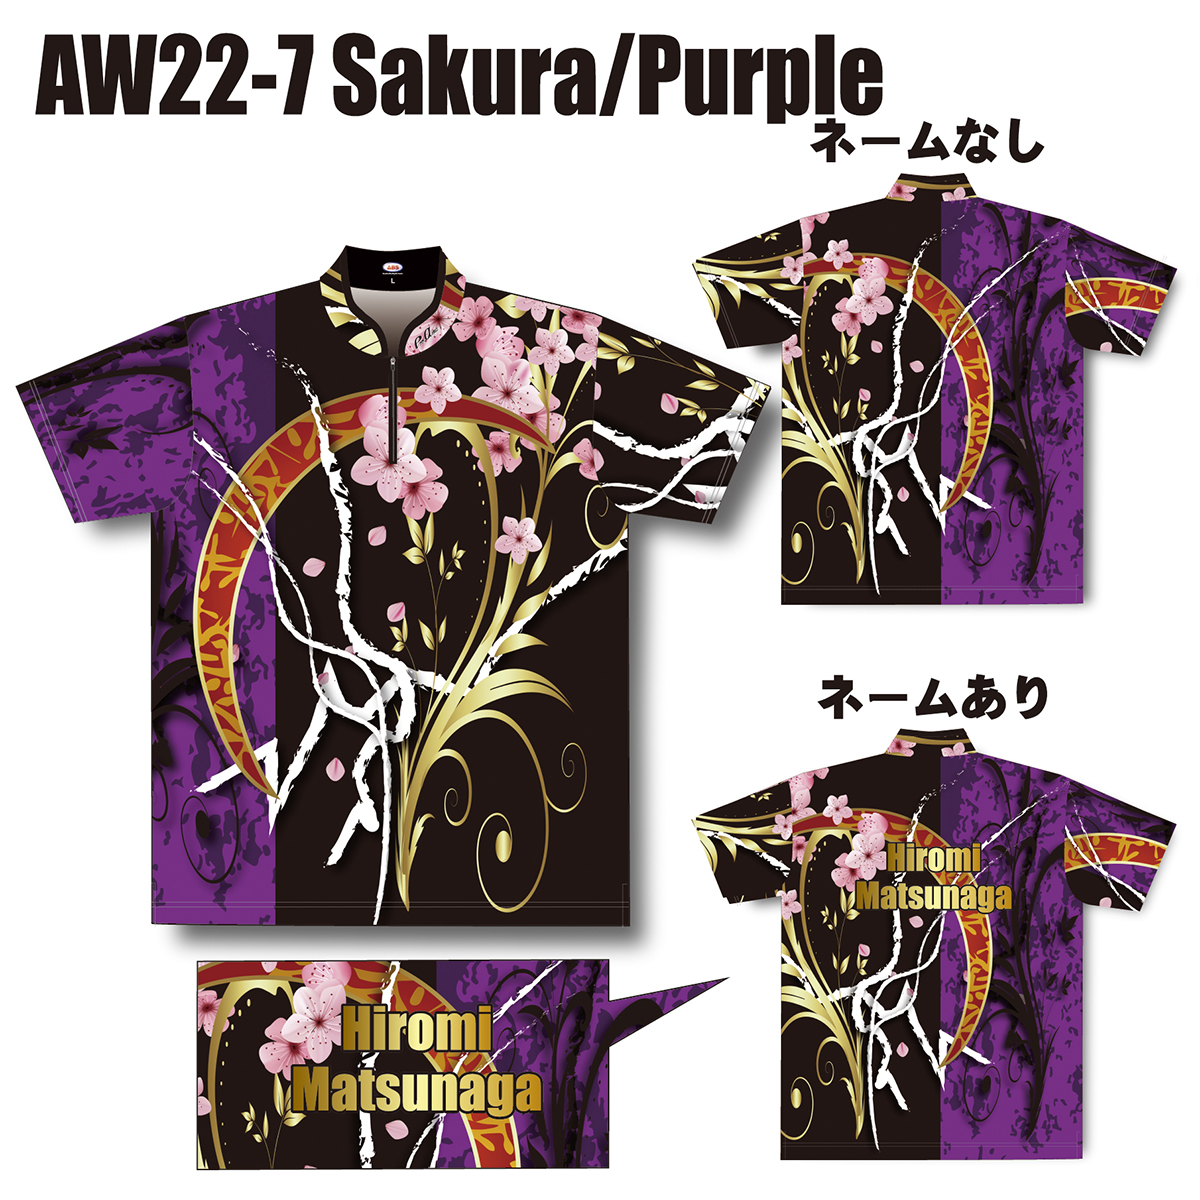 2022スプリングモデル(AW22-7 Sakura/Purple)